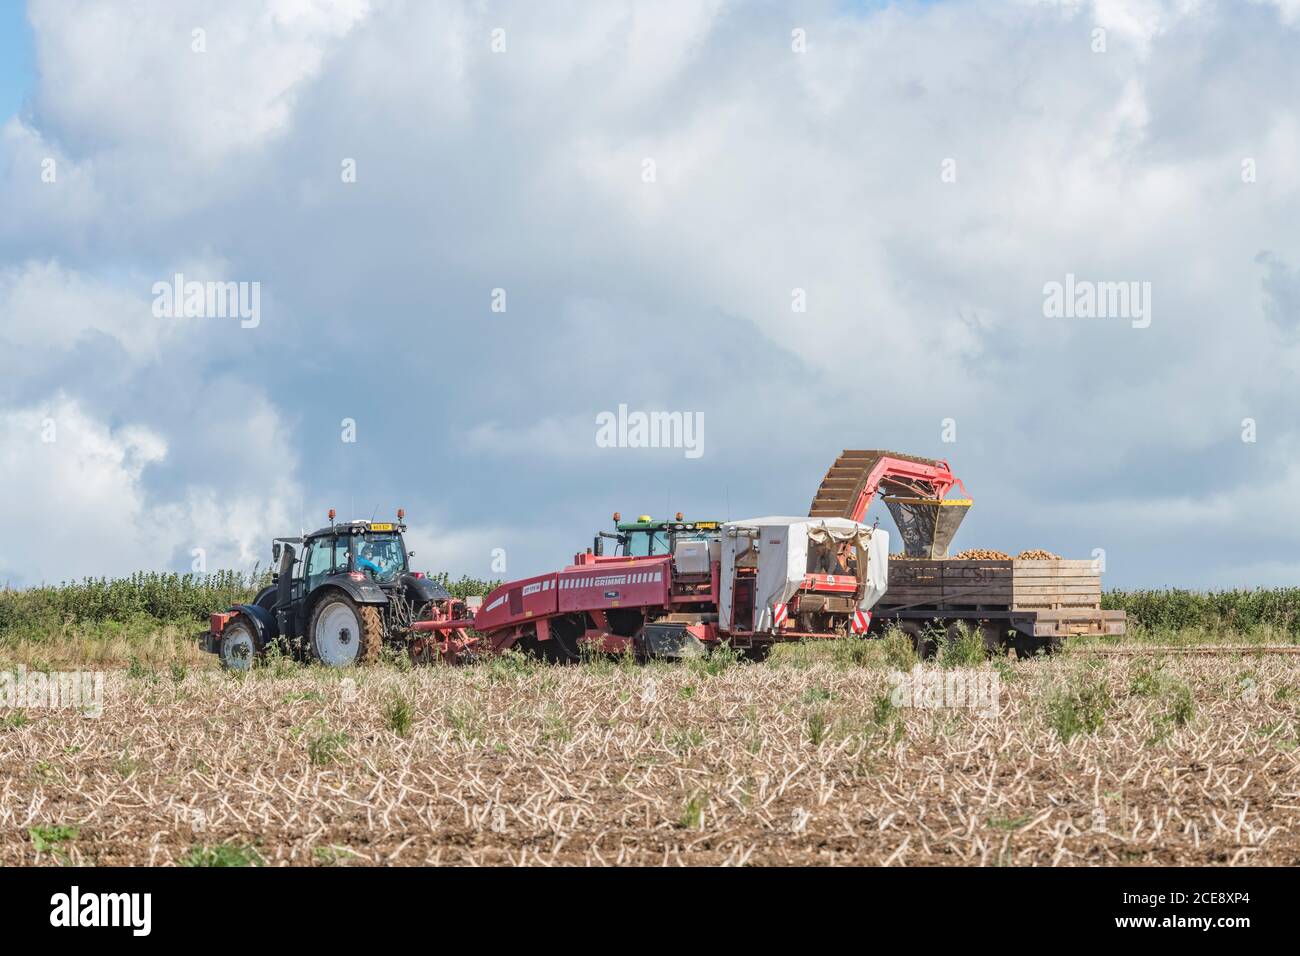 2020 UK Kartoffelernte mit Grimme Kartoffelerntemaschine gezogen von Valtra Traktor & Anhänger gezogen von Claas Arion 640 Traktor. Britische Lebensmittelerzeuger. Stockfoto